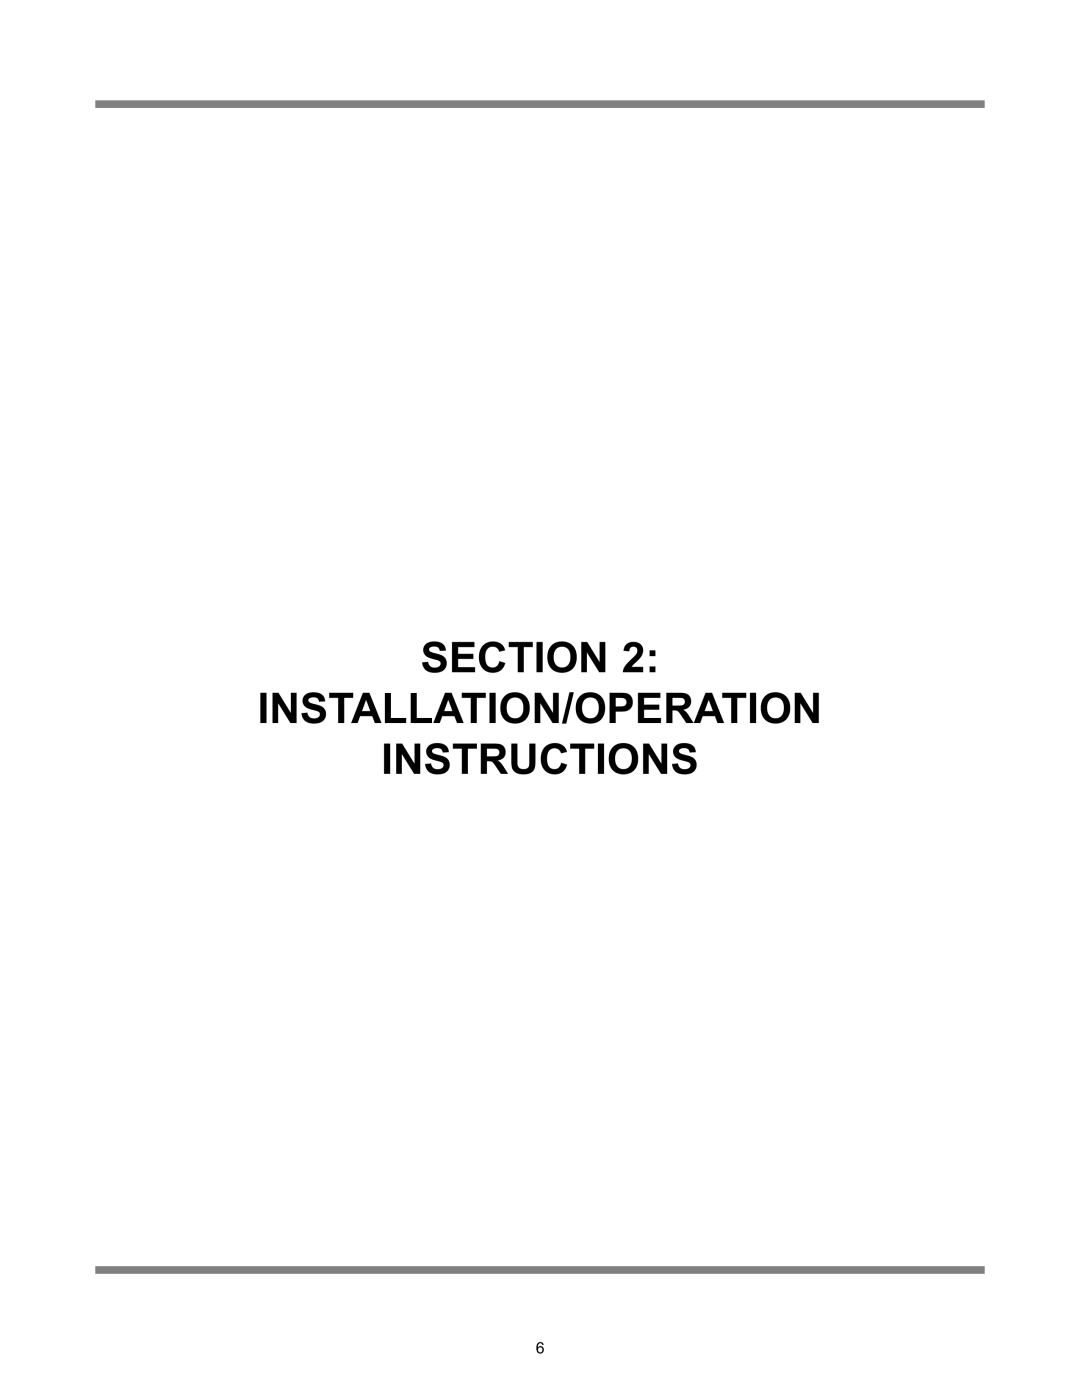 Jackson Avenger LT, Avenger HT technical manual Section Installation/Operation Instructions 